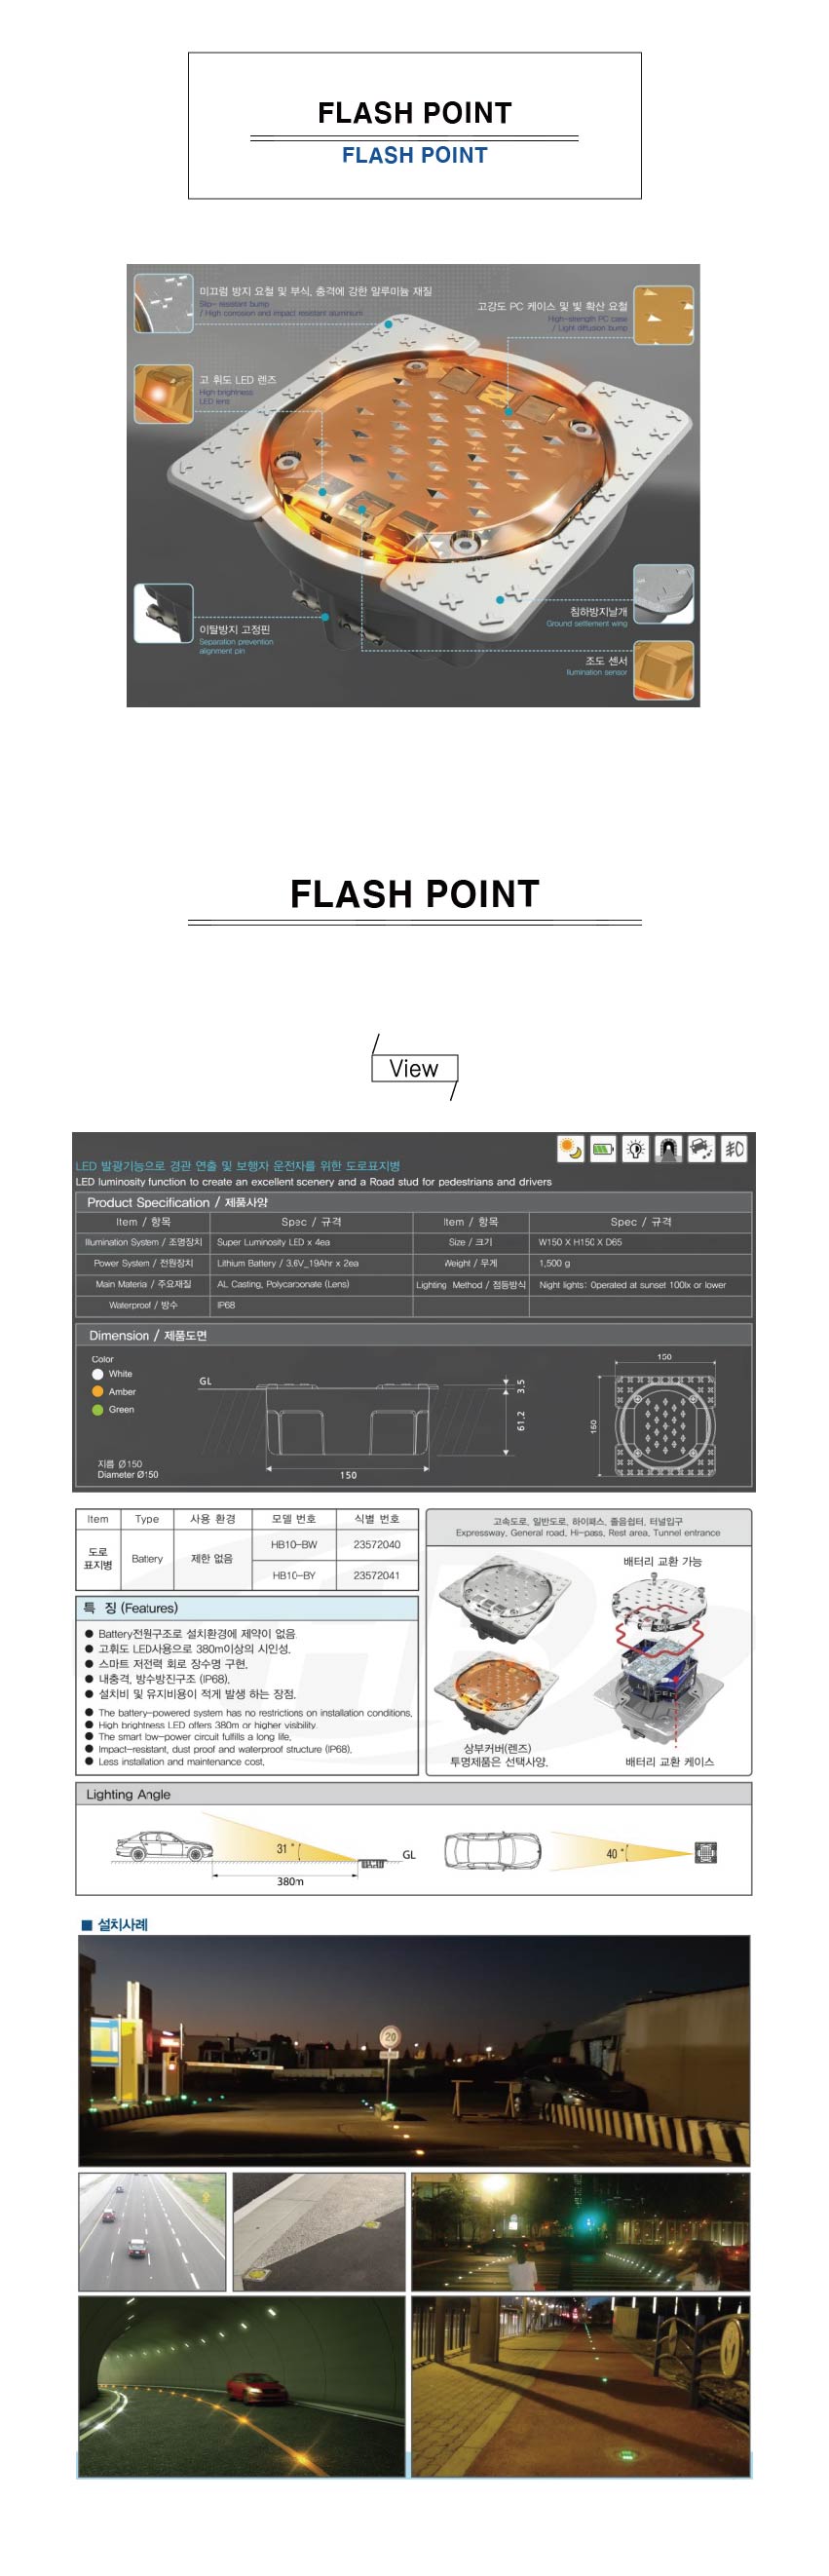 FLASH POINT-1-01.jpg